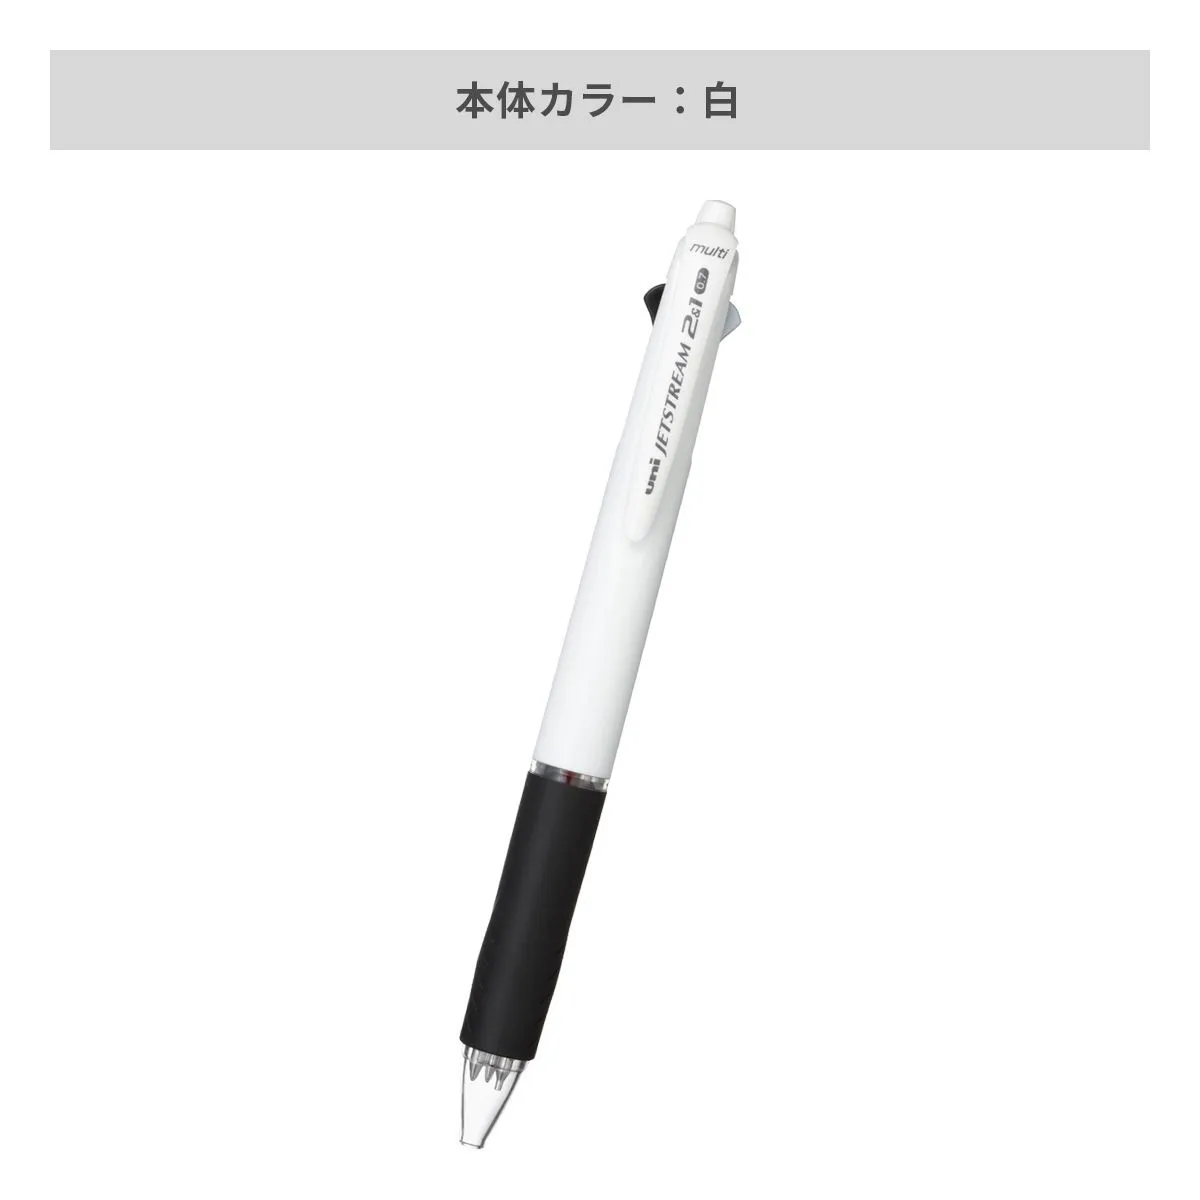 三菱鉛筆 ジェットストリーム 2&1 多機能ペン 白軸 0.7mm【多機能ペン / インクジェット印刷】 画像3